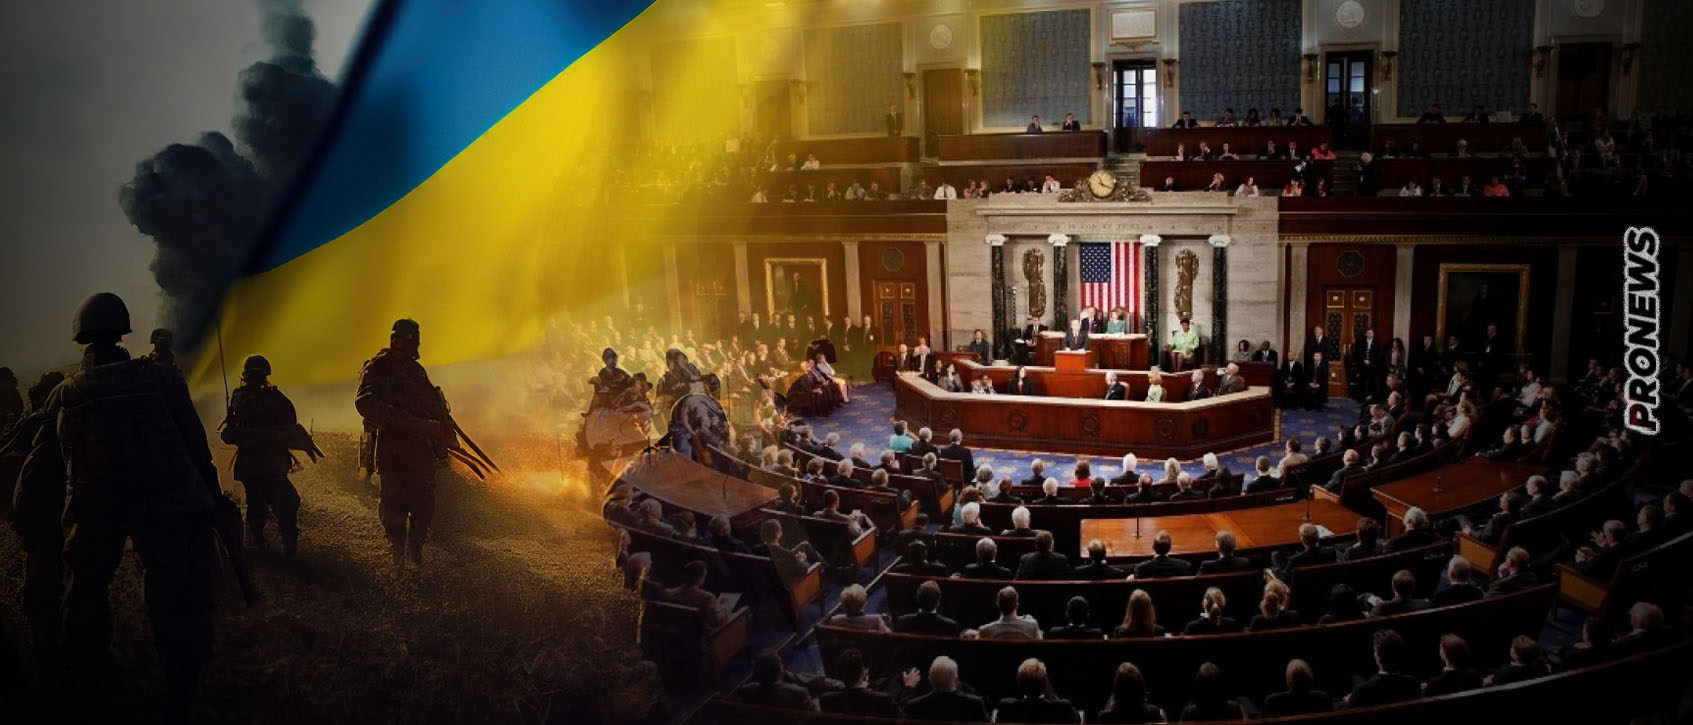 ΗΠΑ: Η Γερουσία συμφώνησε να δοθεί βοήθεια 60 δισεκατομμυρίων δολαρίων στην Ουκρανία! – Καθιστά τον Μπάιντεν ΑΠΟΛΥΤΟ ΔΙΚΤΑΤΟΡΑ!!!